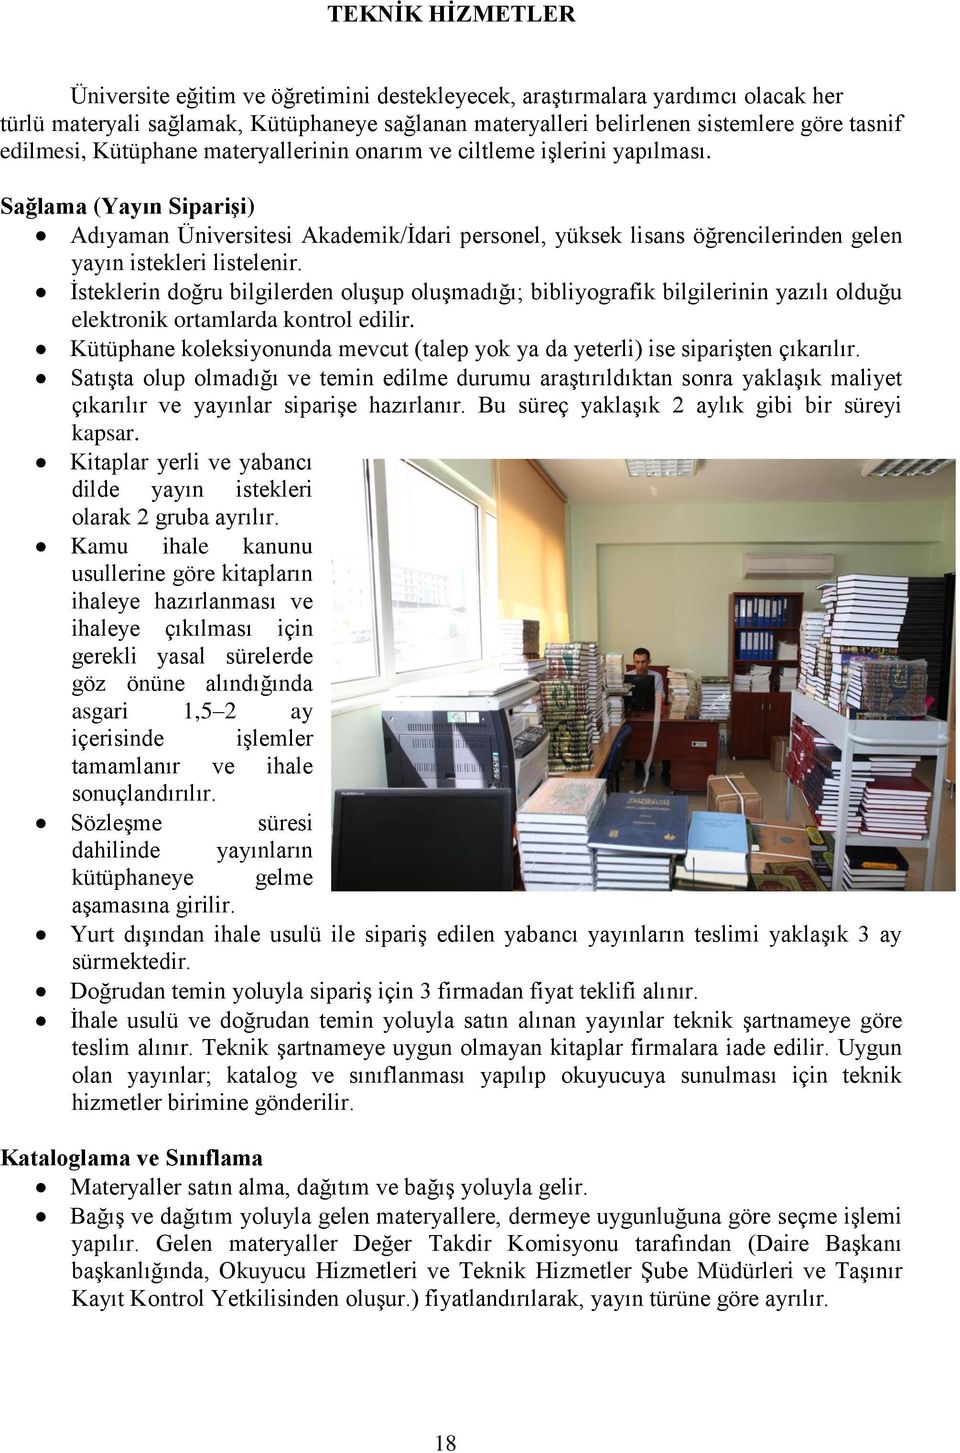 Sağlama (Yayın Siparişi) Adıyaman Üniversitesi Akademik/İdari personel, yüksek lisans öğrencilerinden gelen yayın istekleri listelenir.